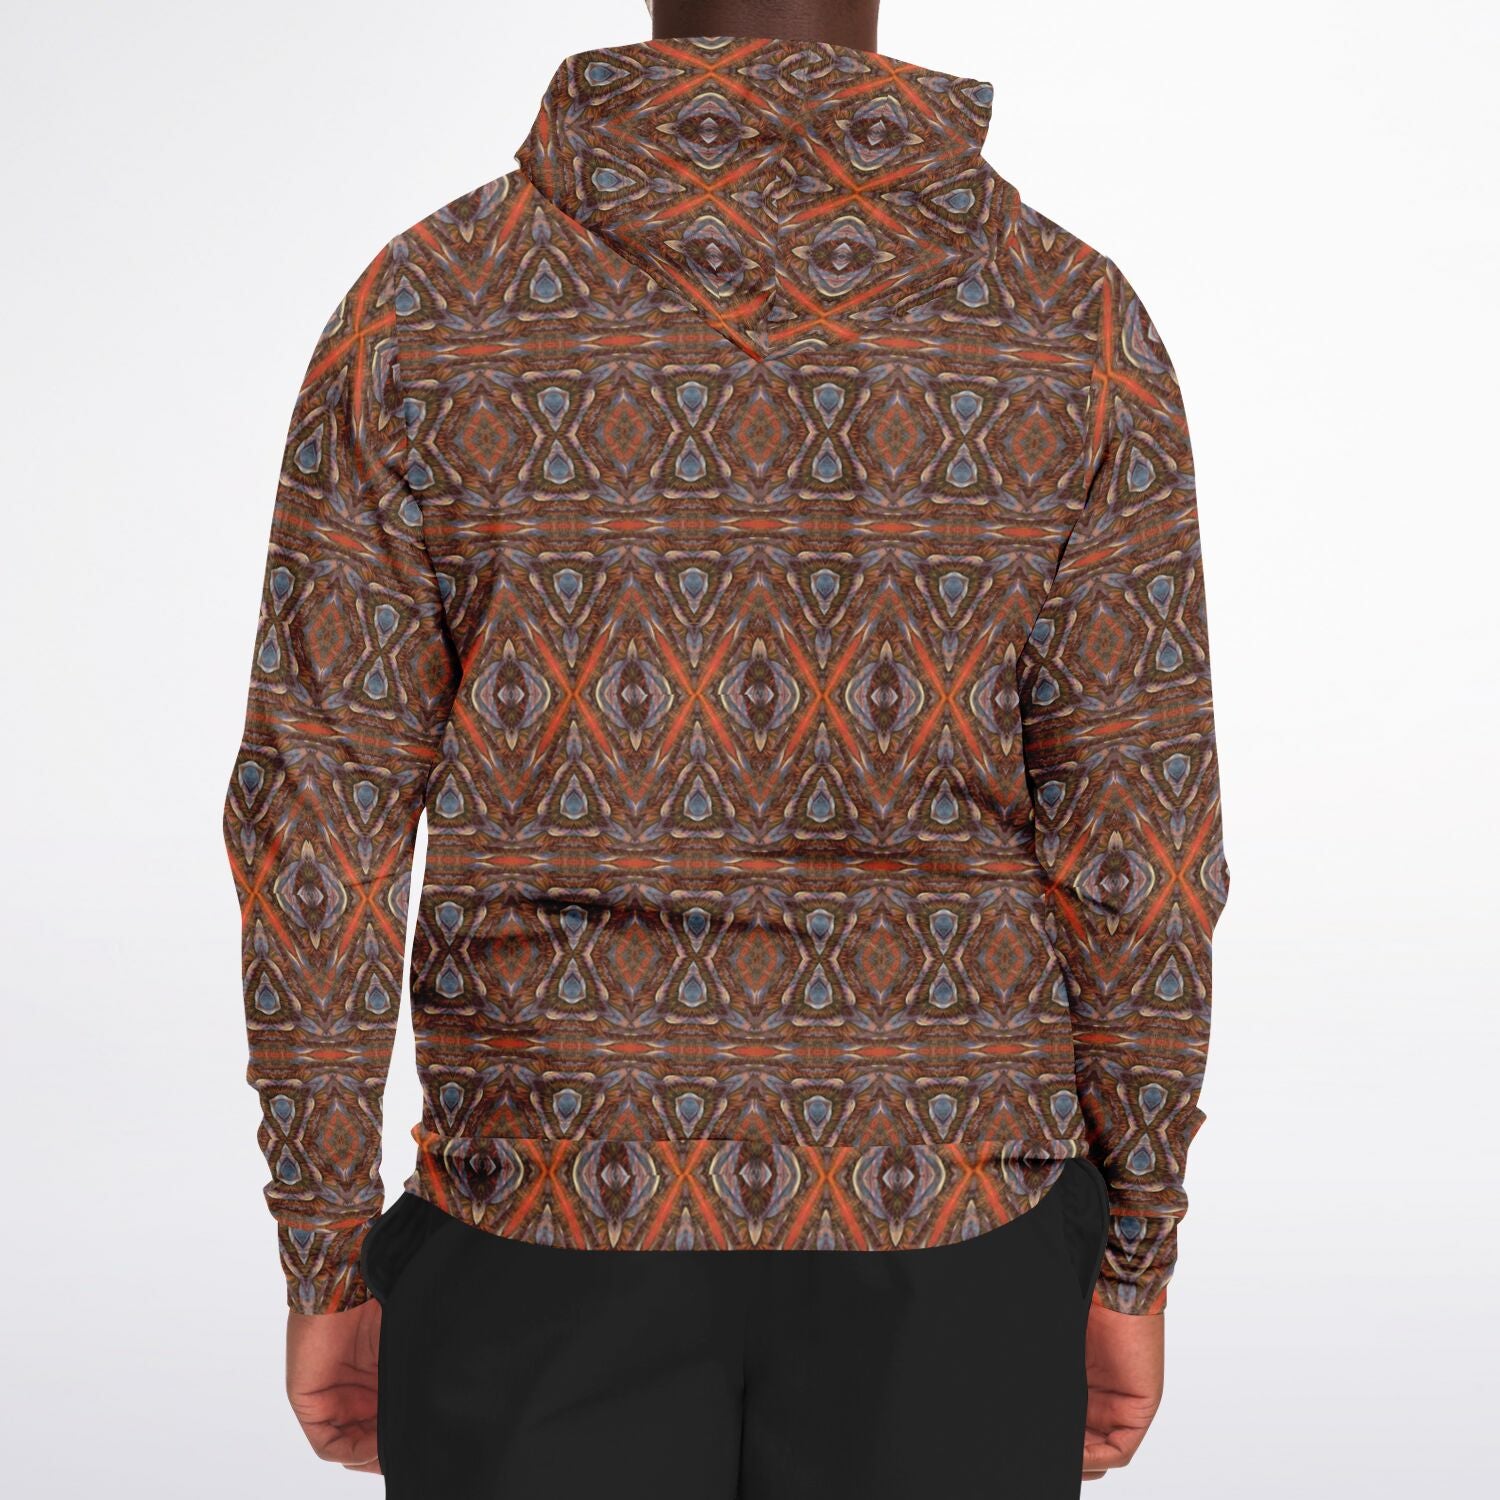 Back view of mens brown and orange designer hoodie